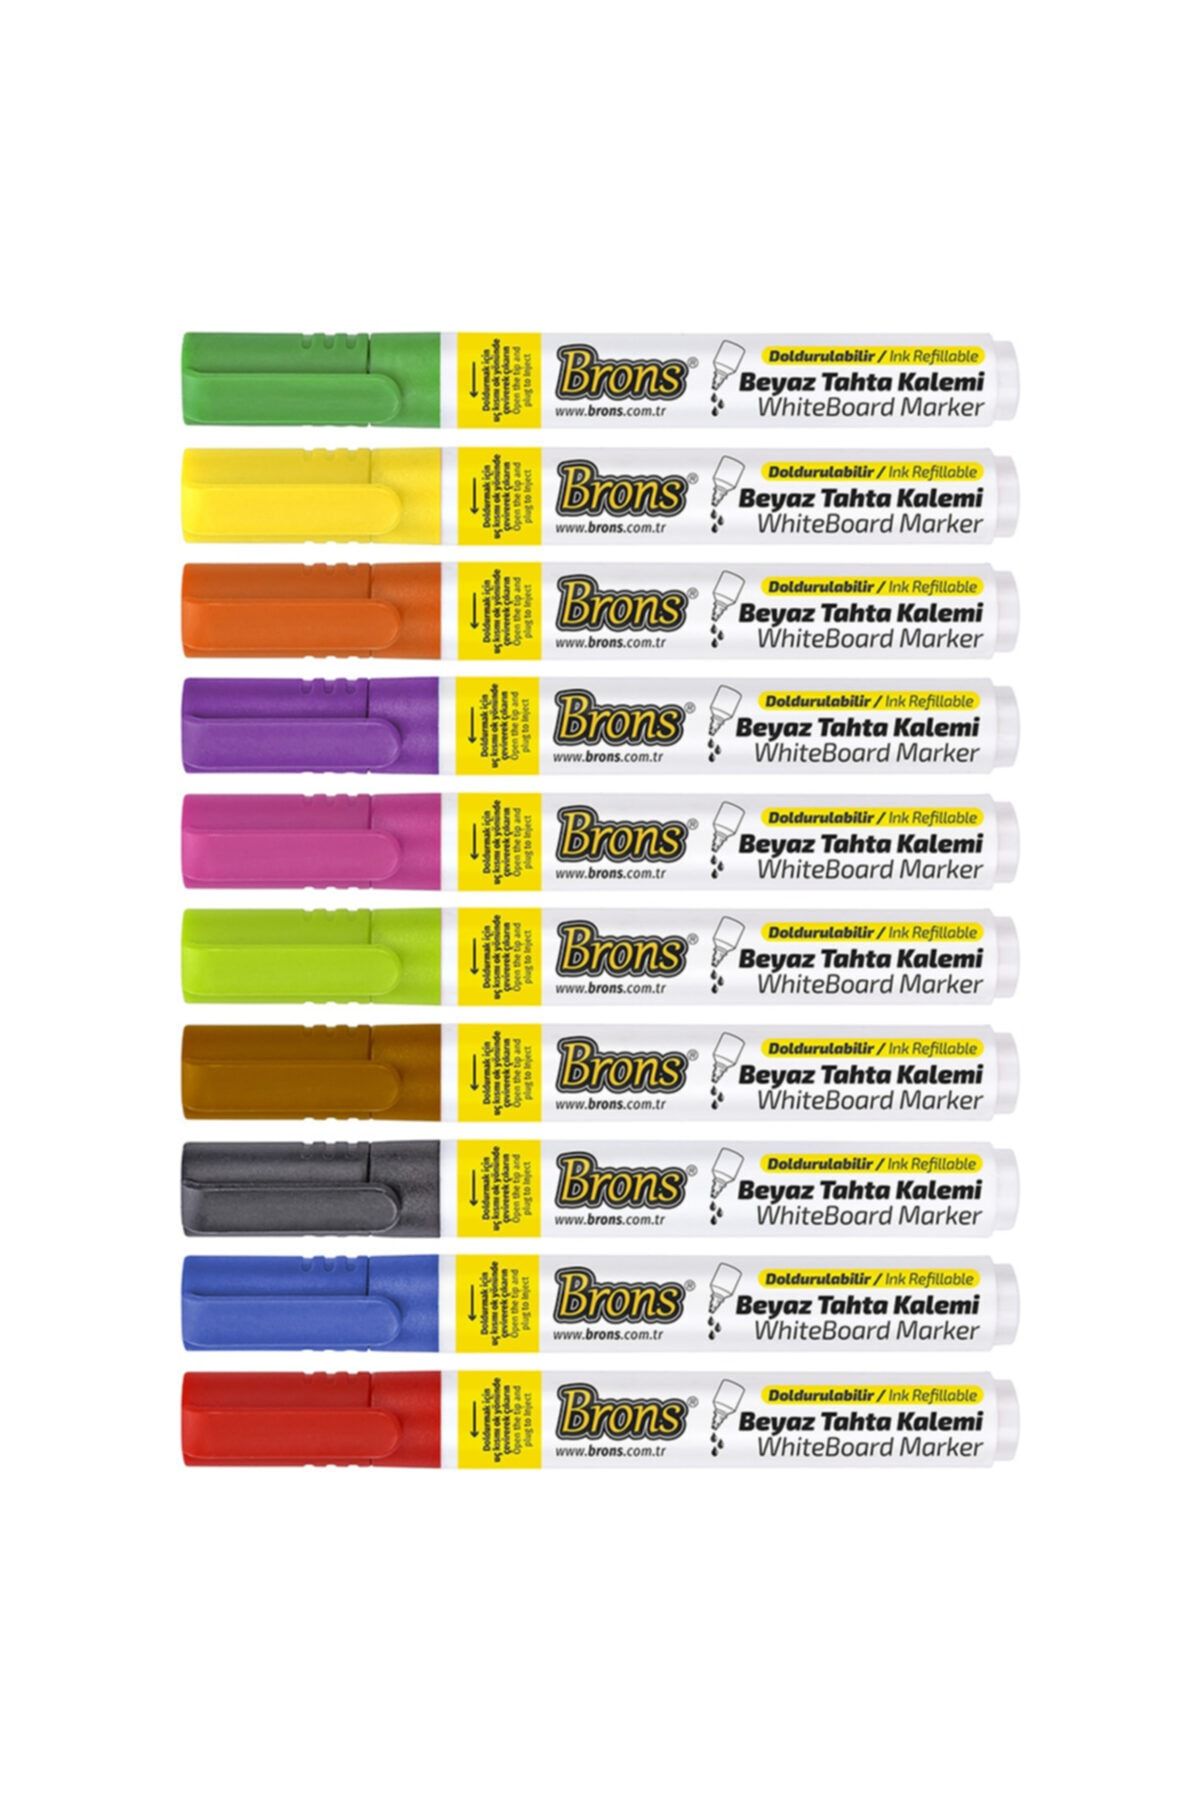 Brons Doldurulabilir Beyaz Tahta Kalemi 10 Renk Set